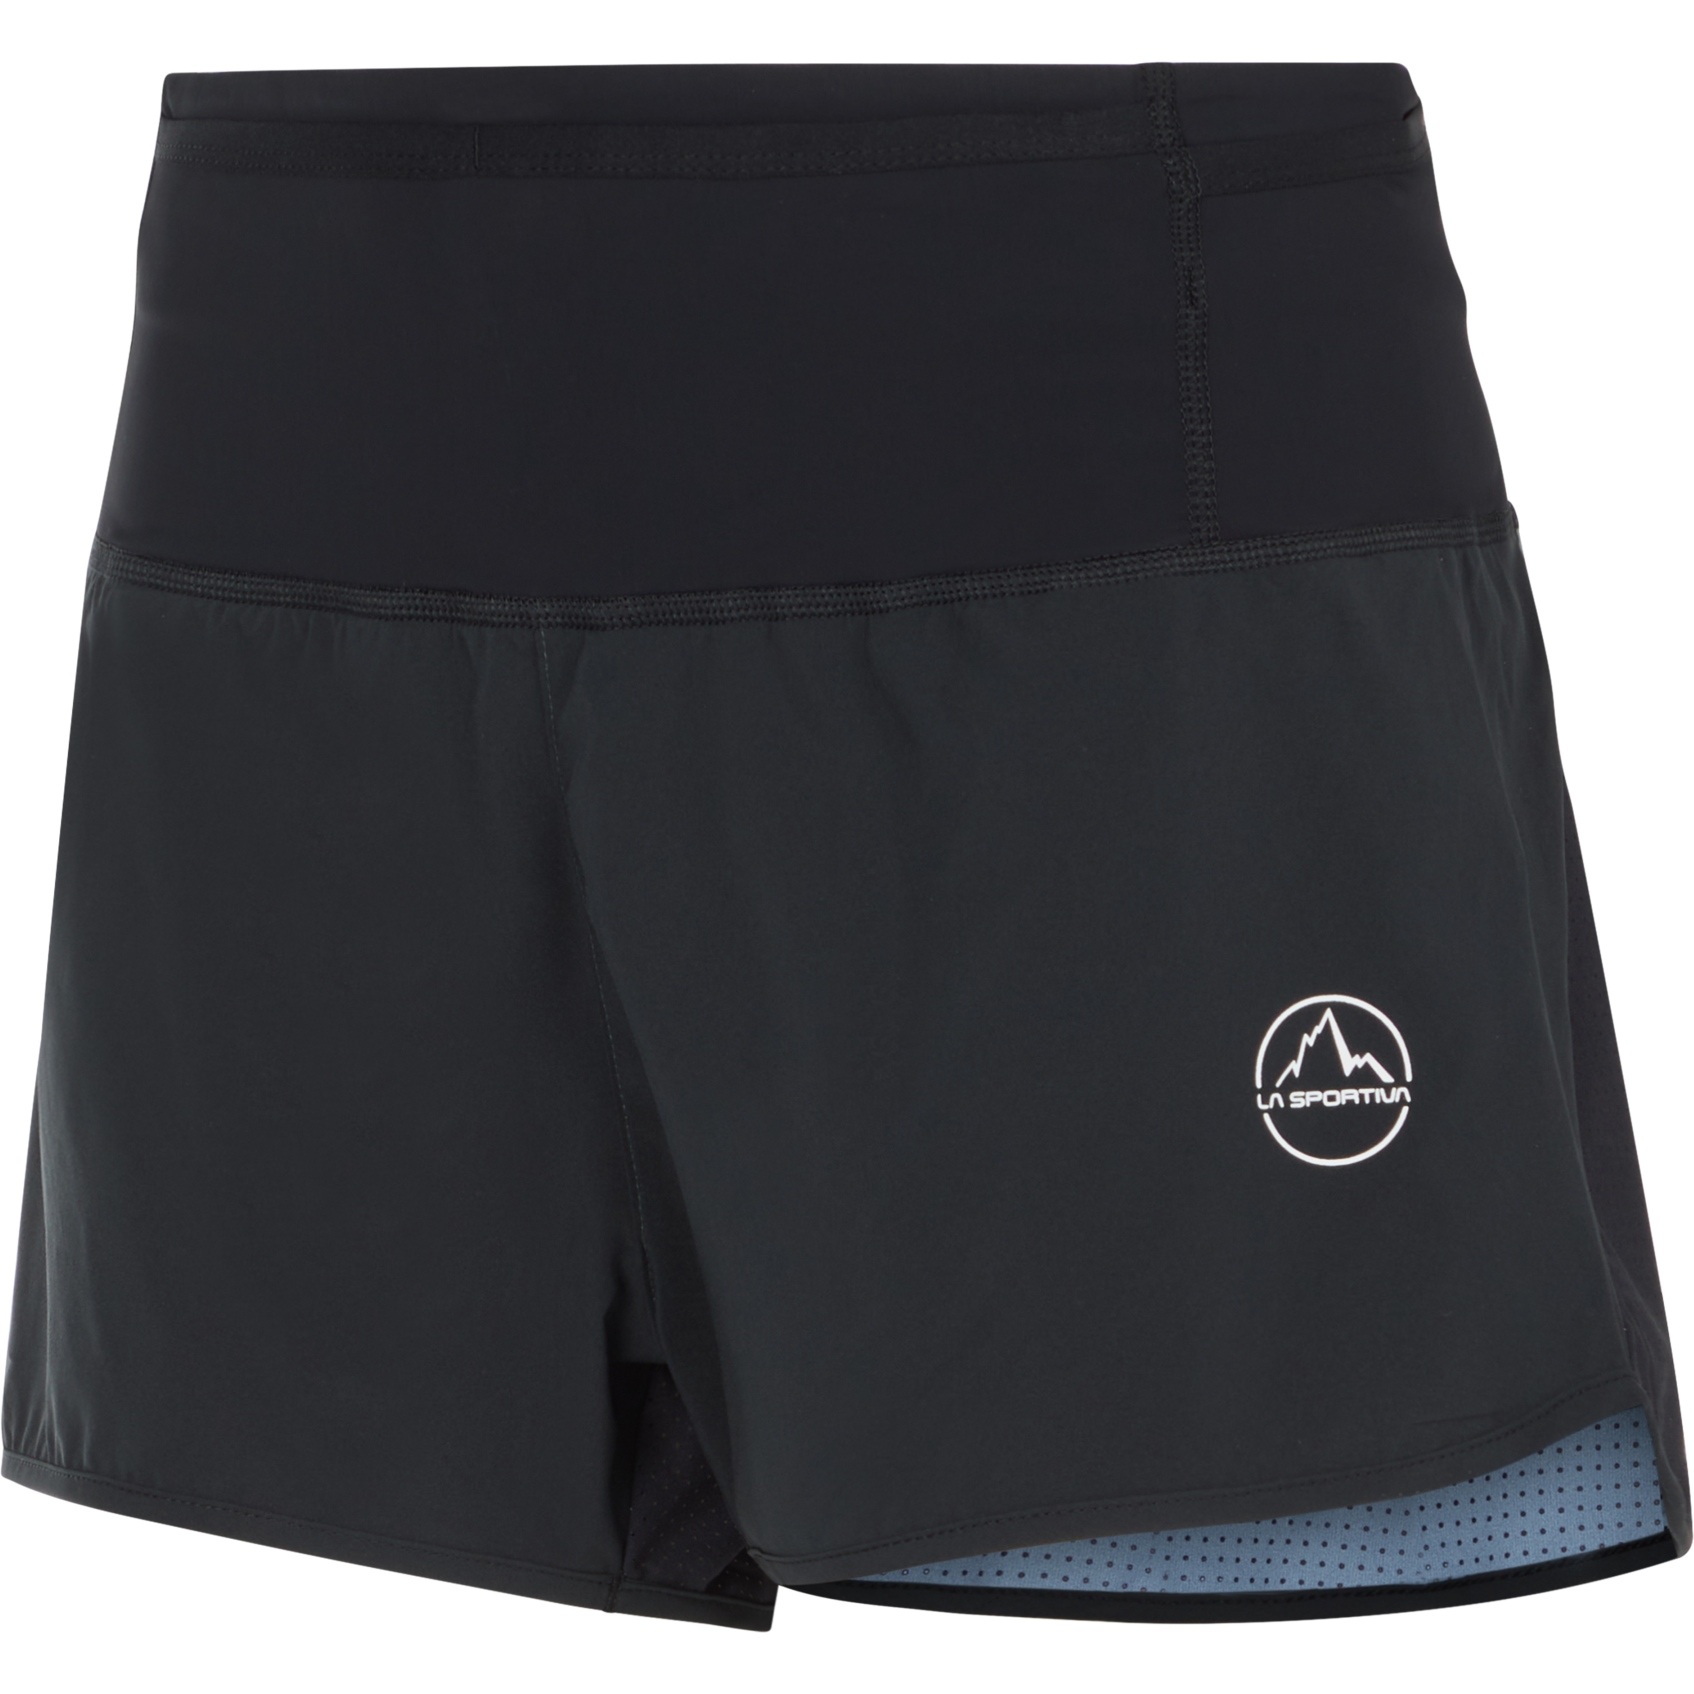 Produktbild von La Sportiva Vector Shorts Damen - Schwarz/Weiß